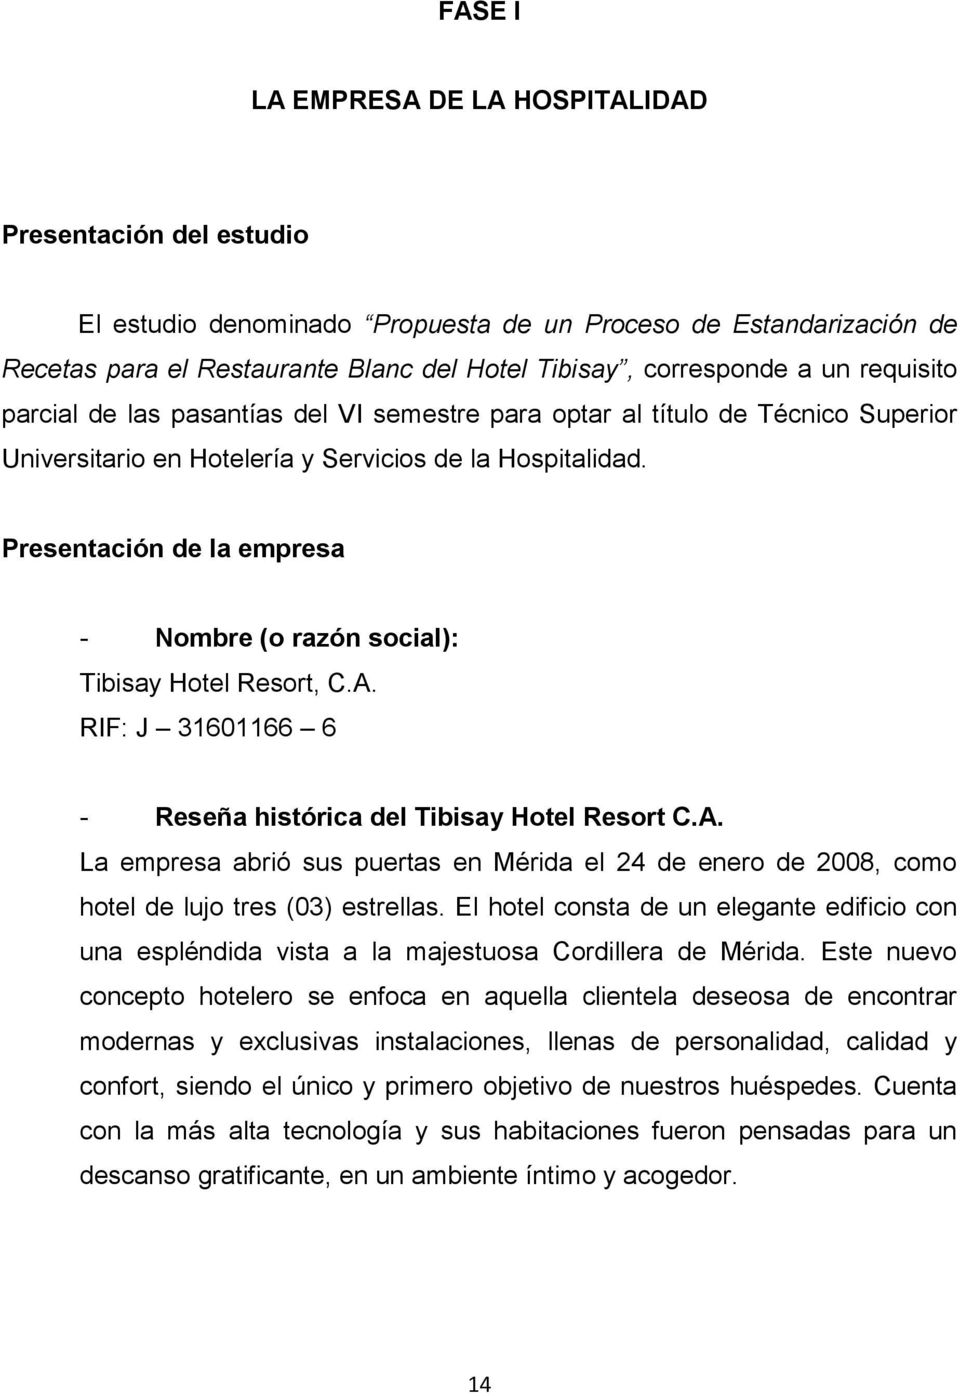 Propuesta de un proceso de estandarización de recetas para el Restaurante  Blanc del Hotel Tibisay - PDF Free Download